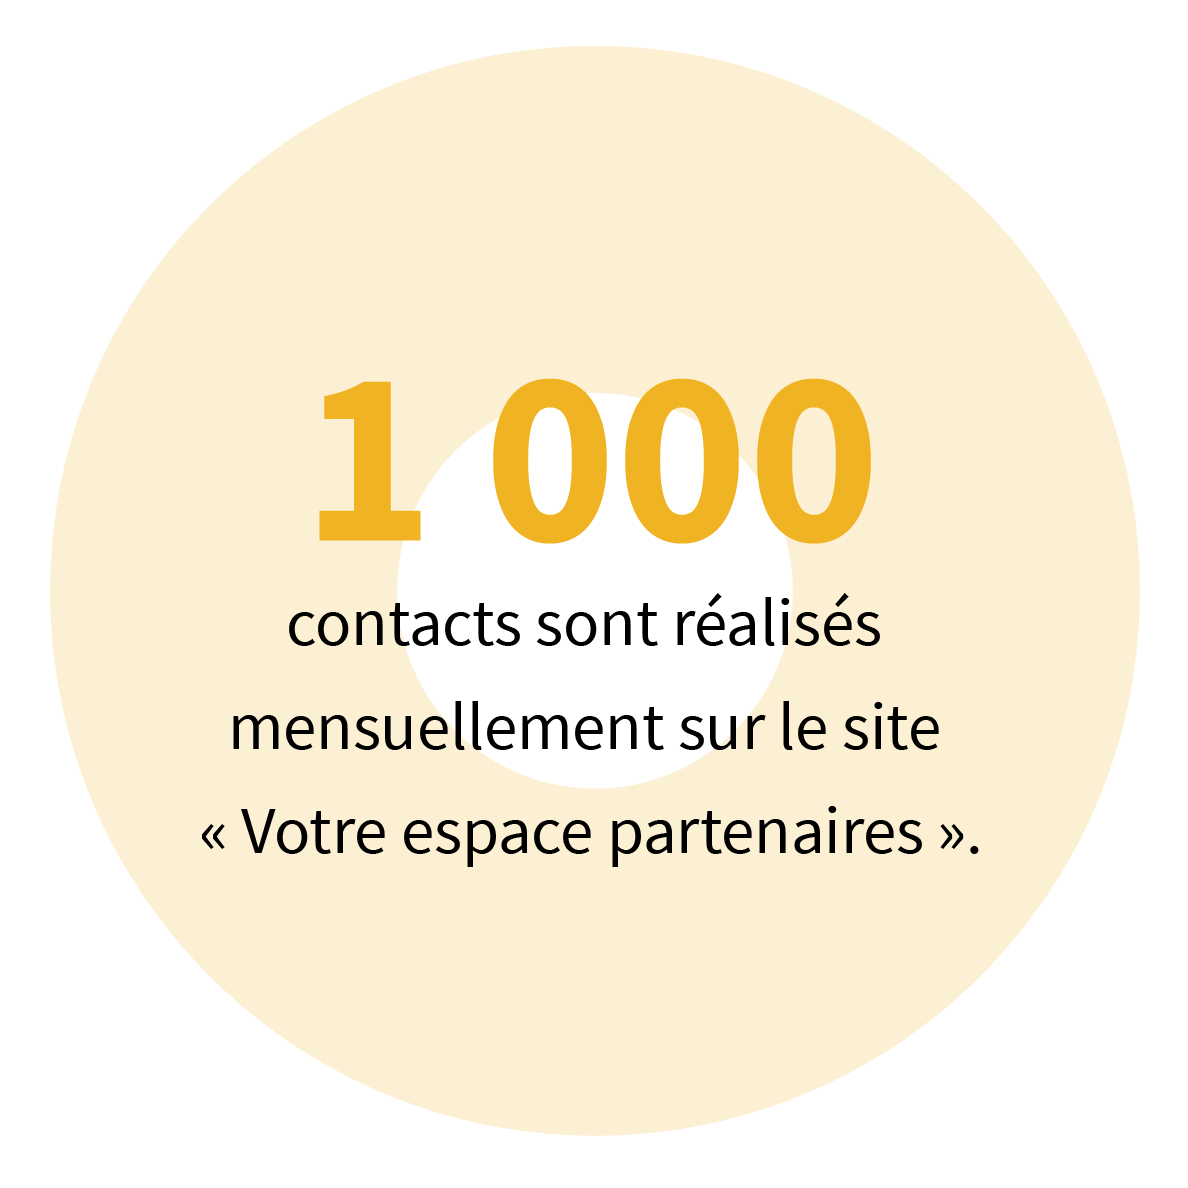 1 000 contacts sont réalisés mensuellement sur le site « Votre espace partenaires ».